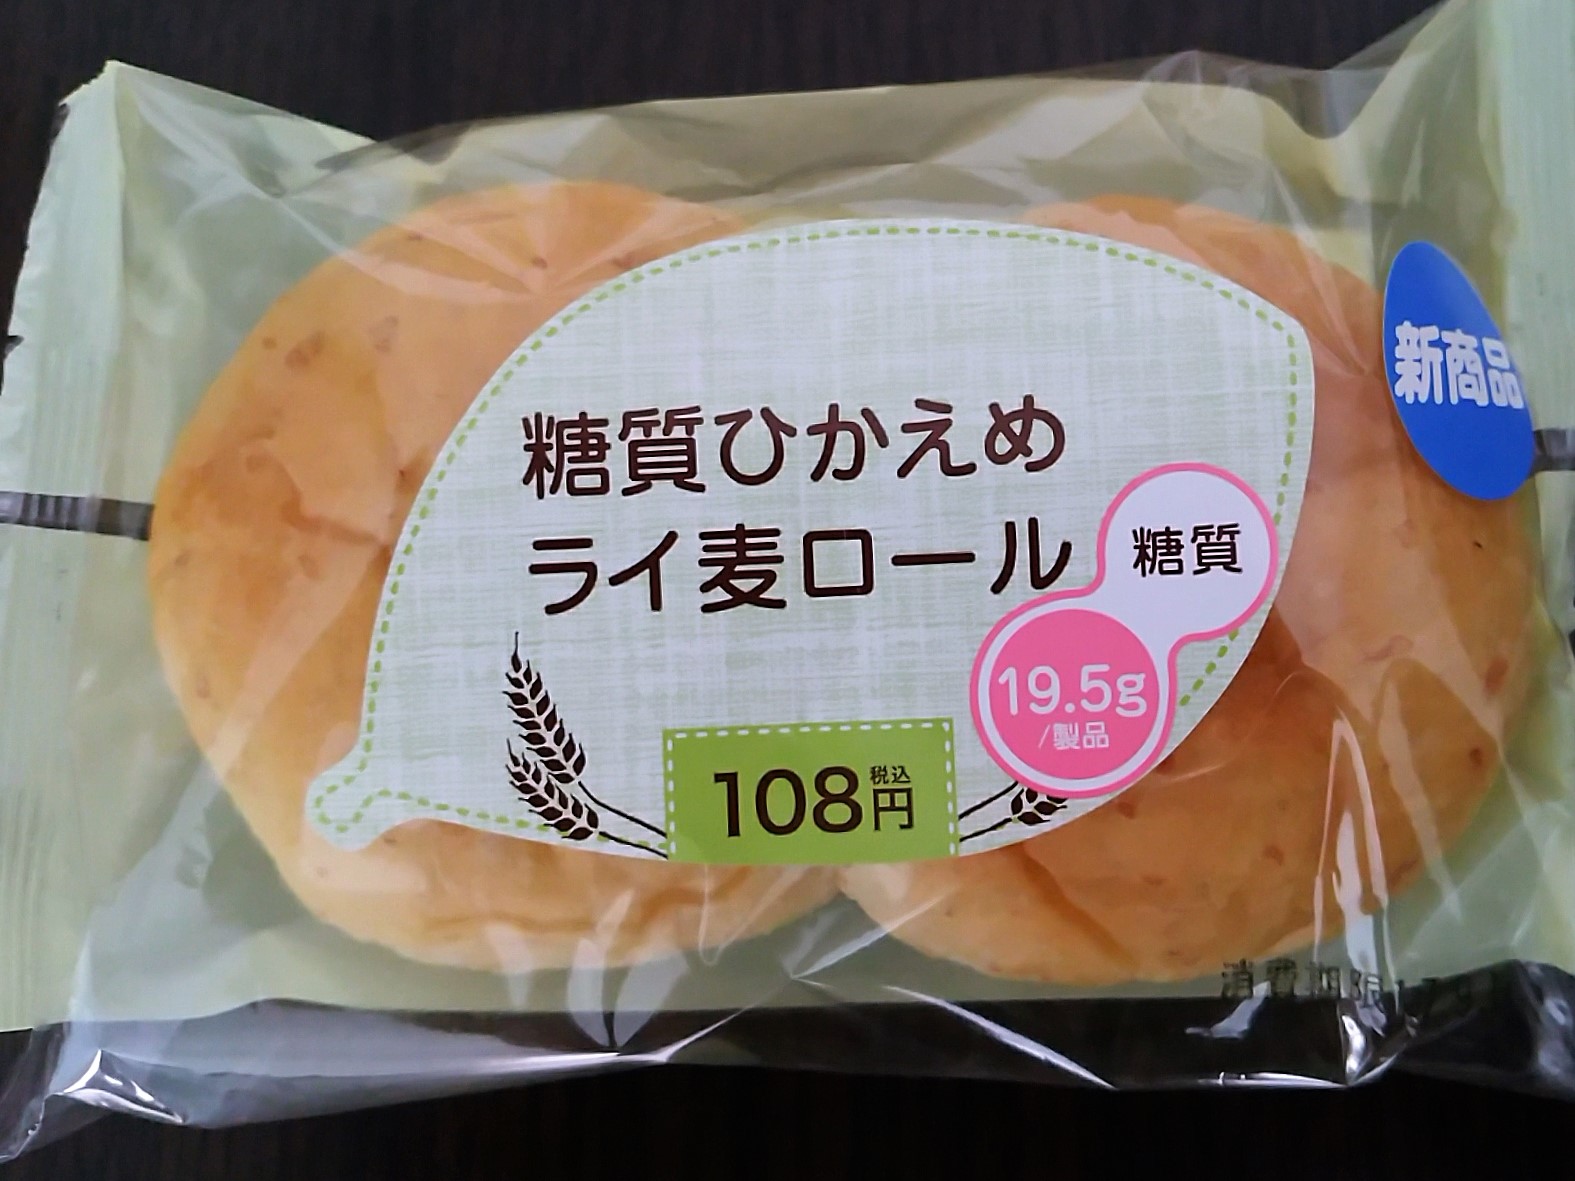 袋パン 糖質ひかえめライ麦ロール セイコーマート 小麦粉の甘みが感じられるヘルシーパン